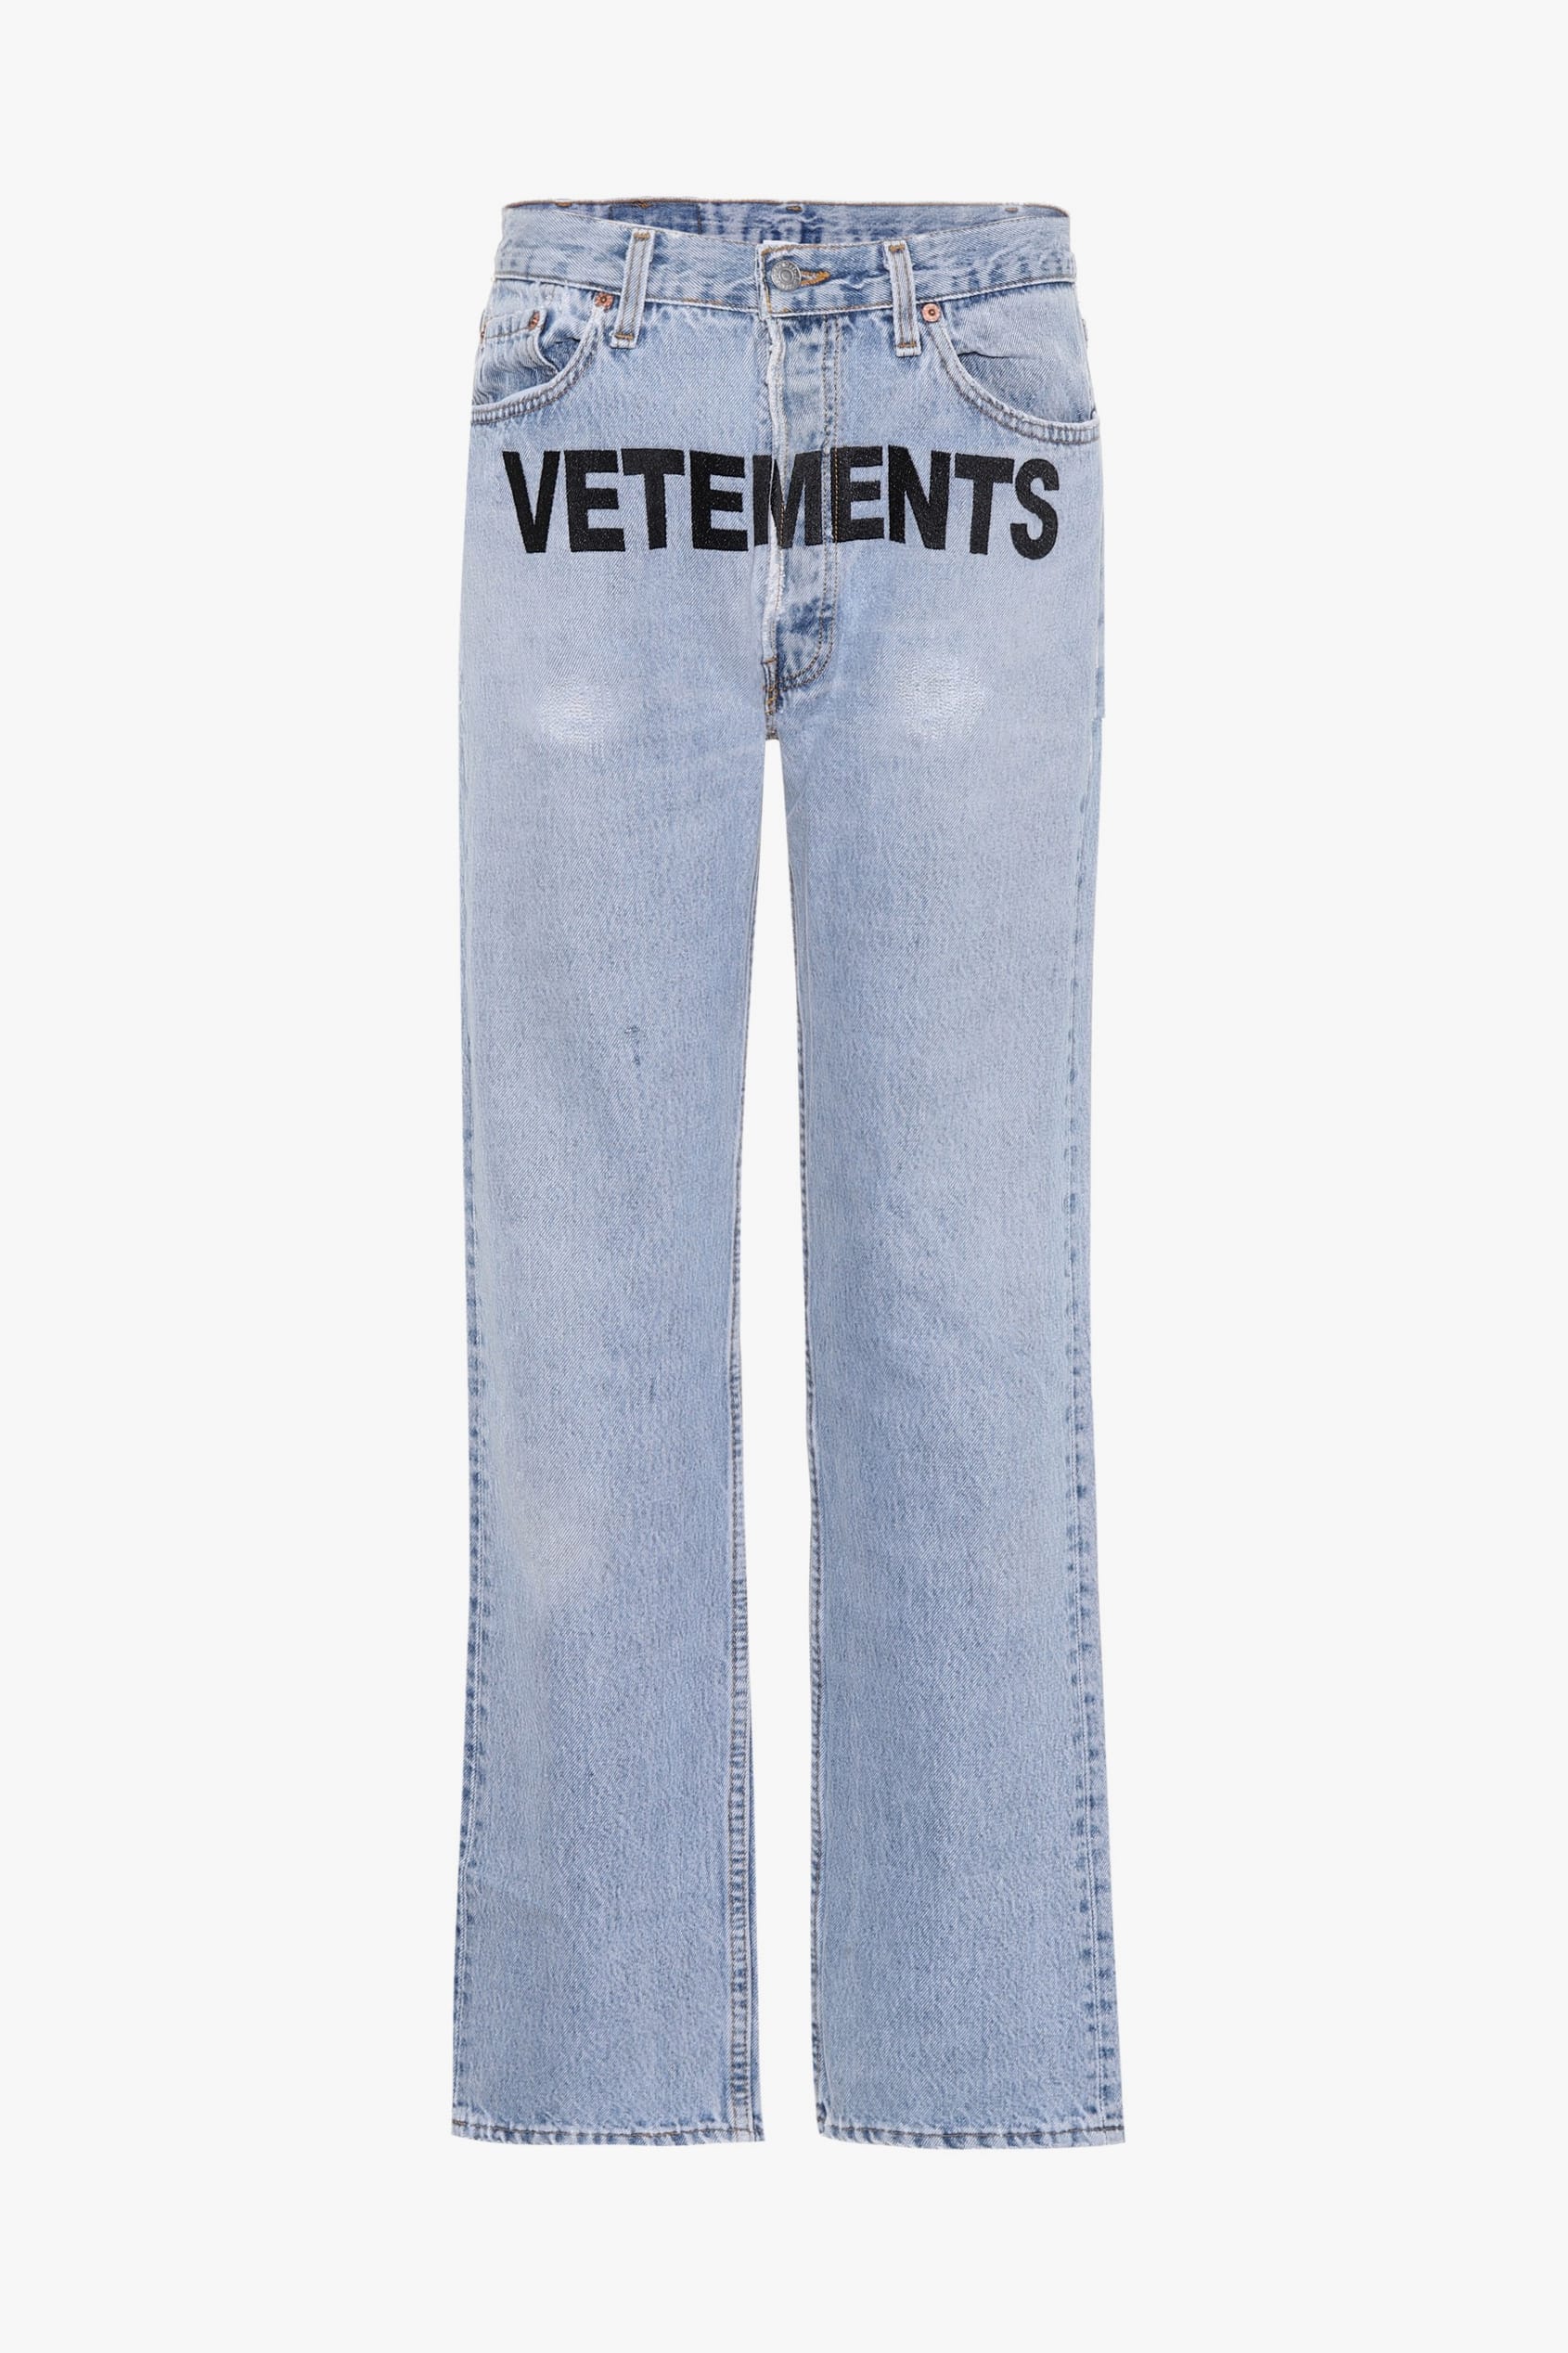 vetements levis jeans